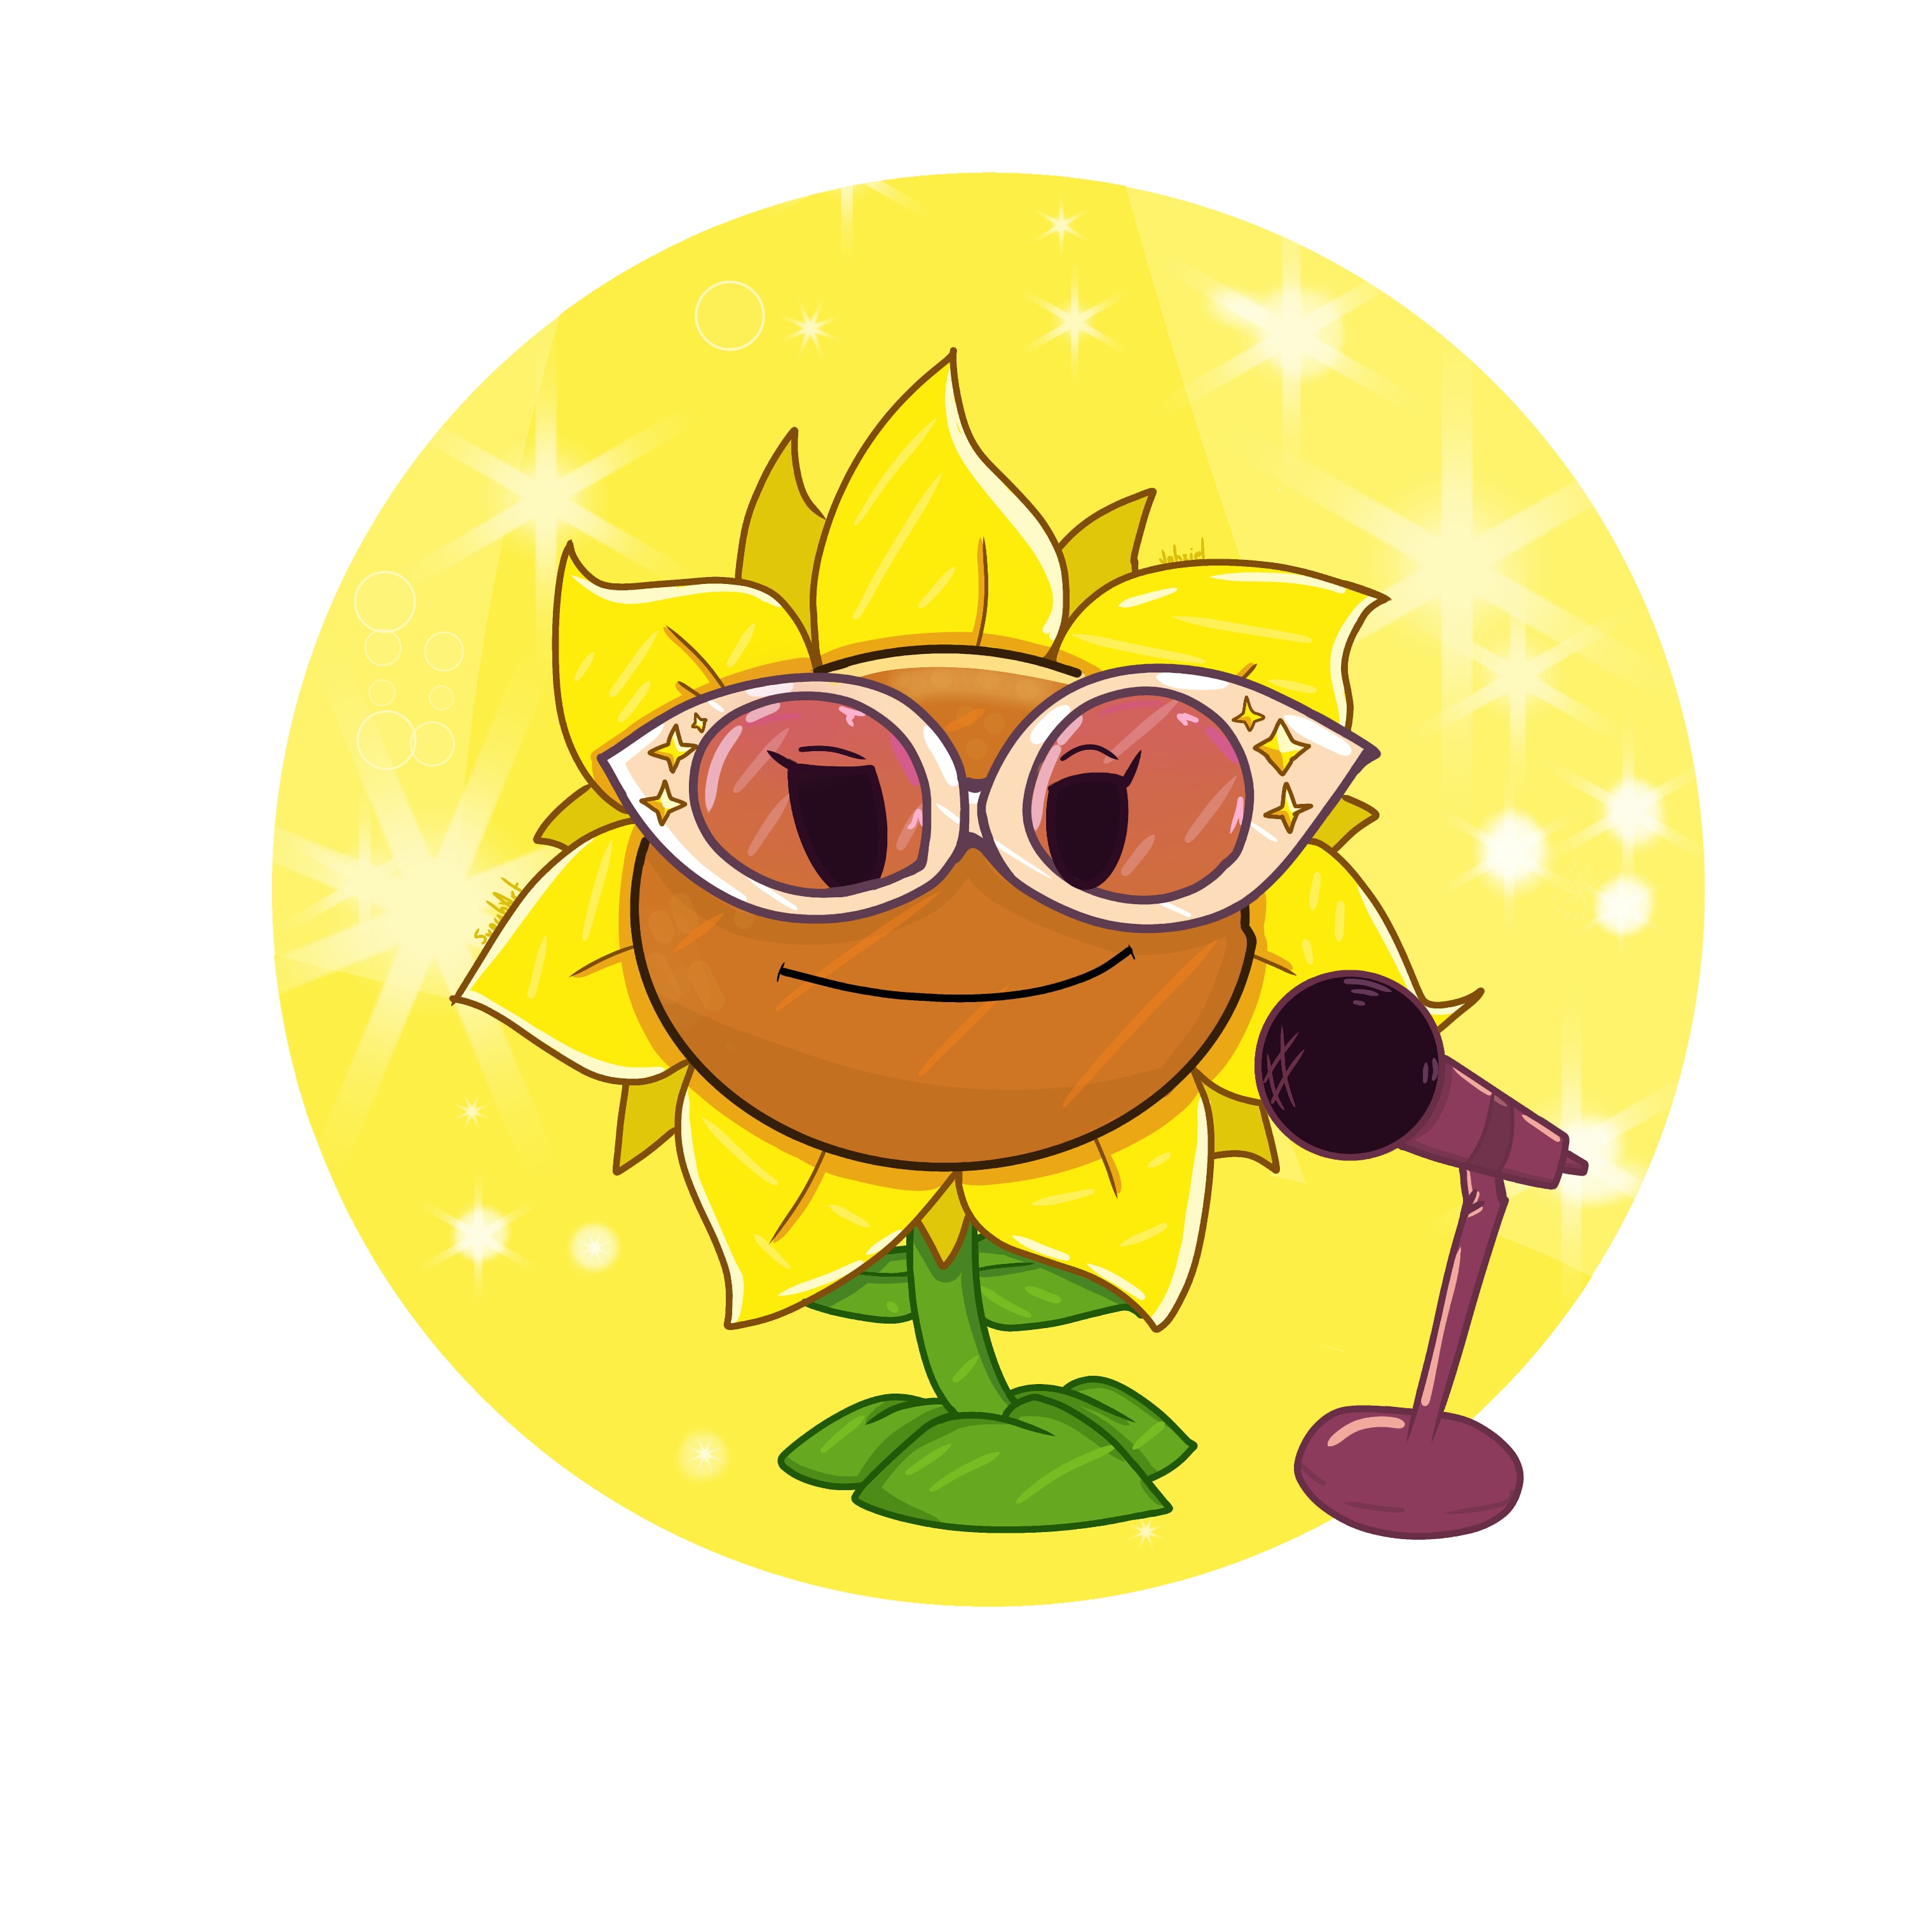 Baby Sunflower in pvz2 by Sunflower75 on DeviantArt